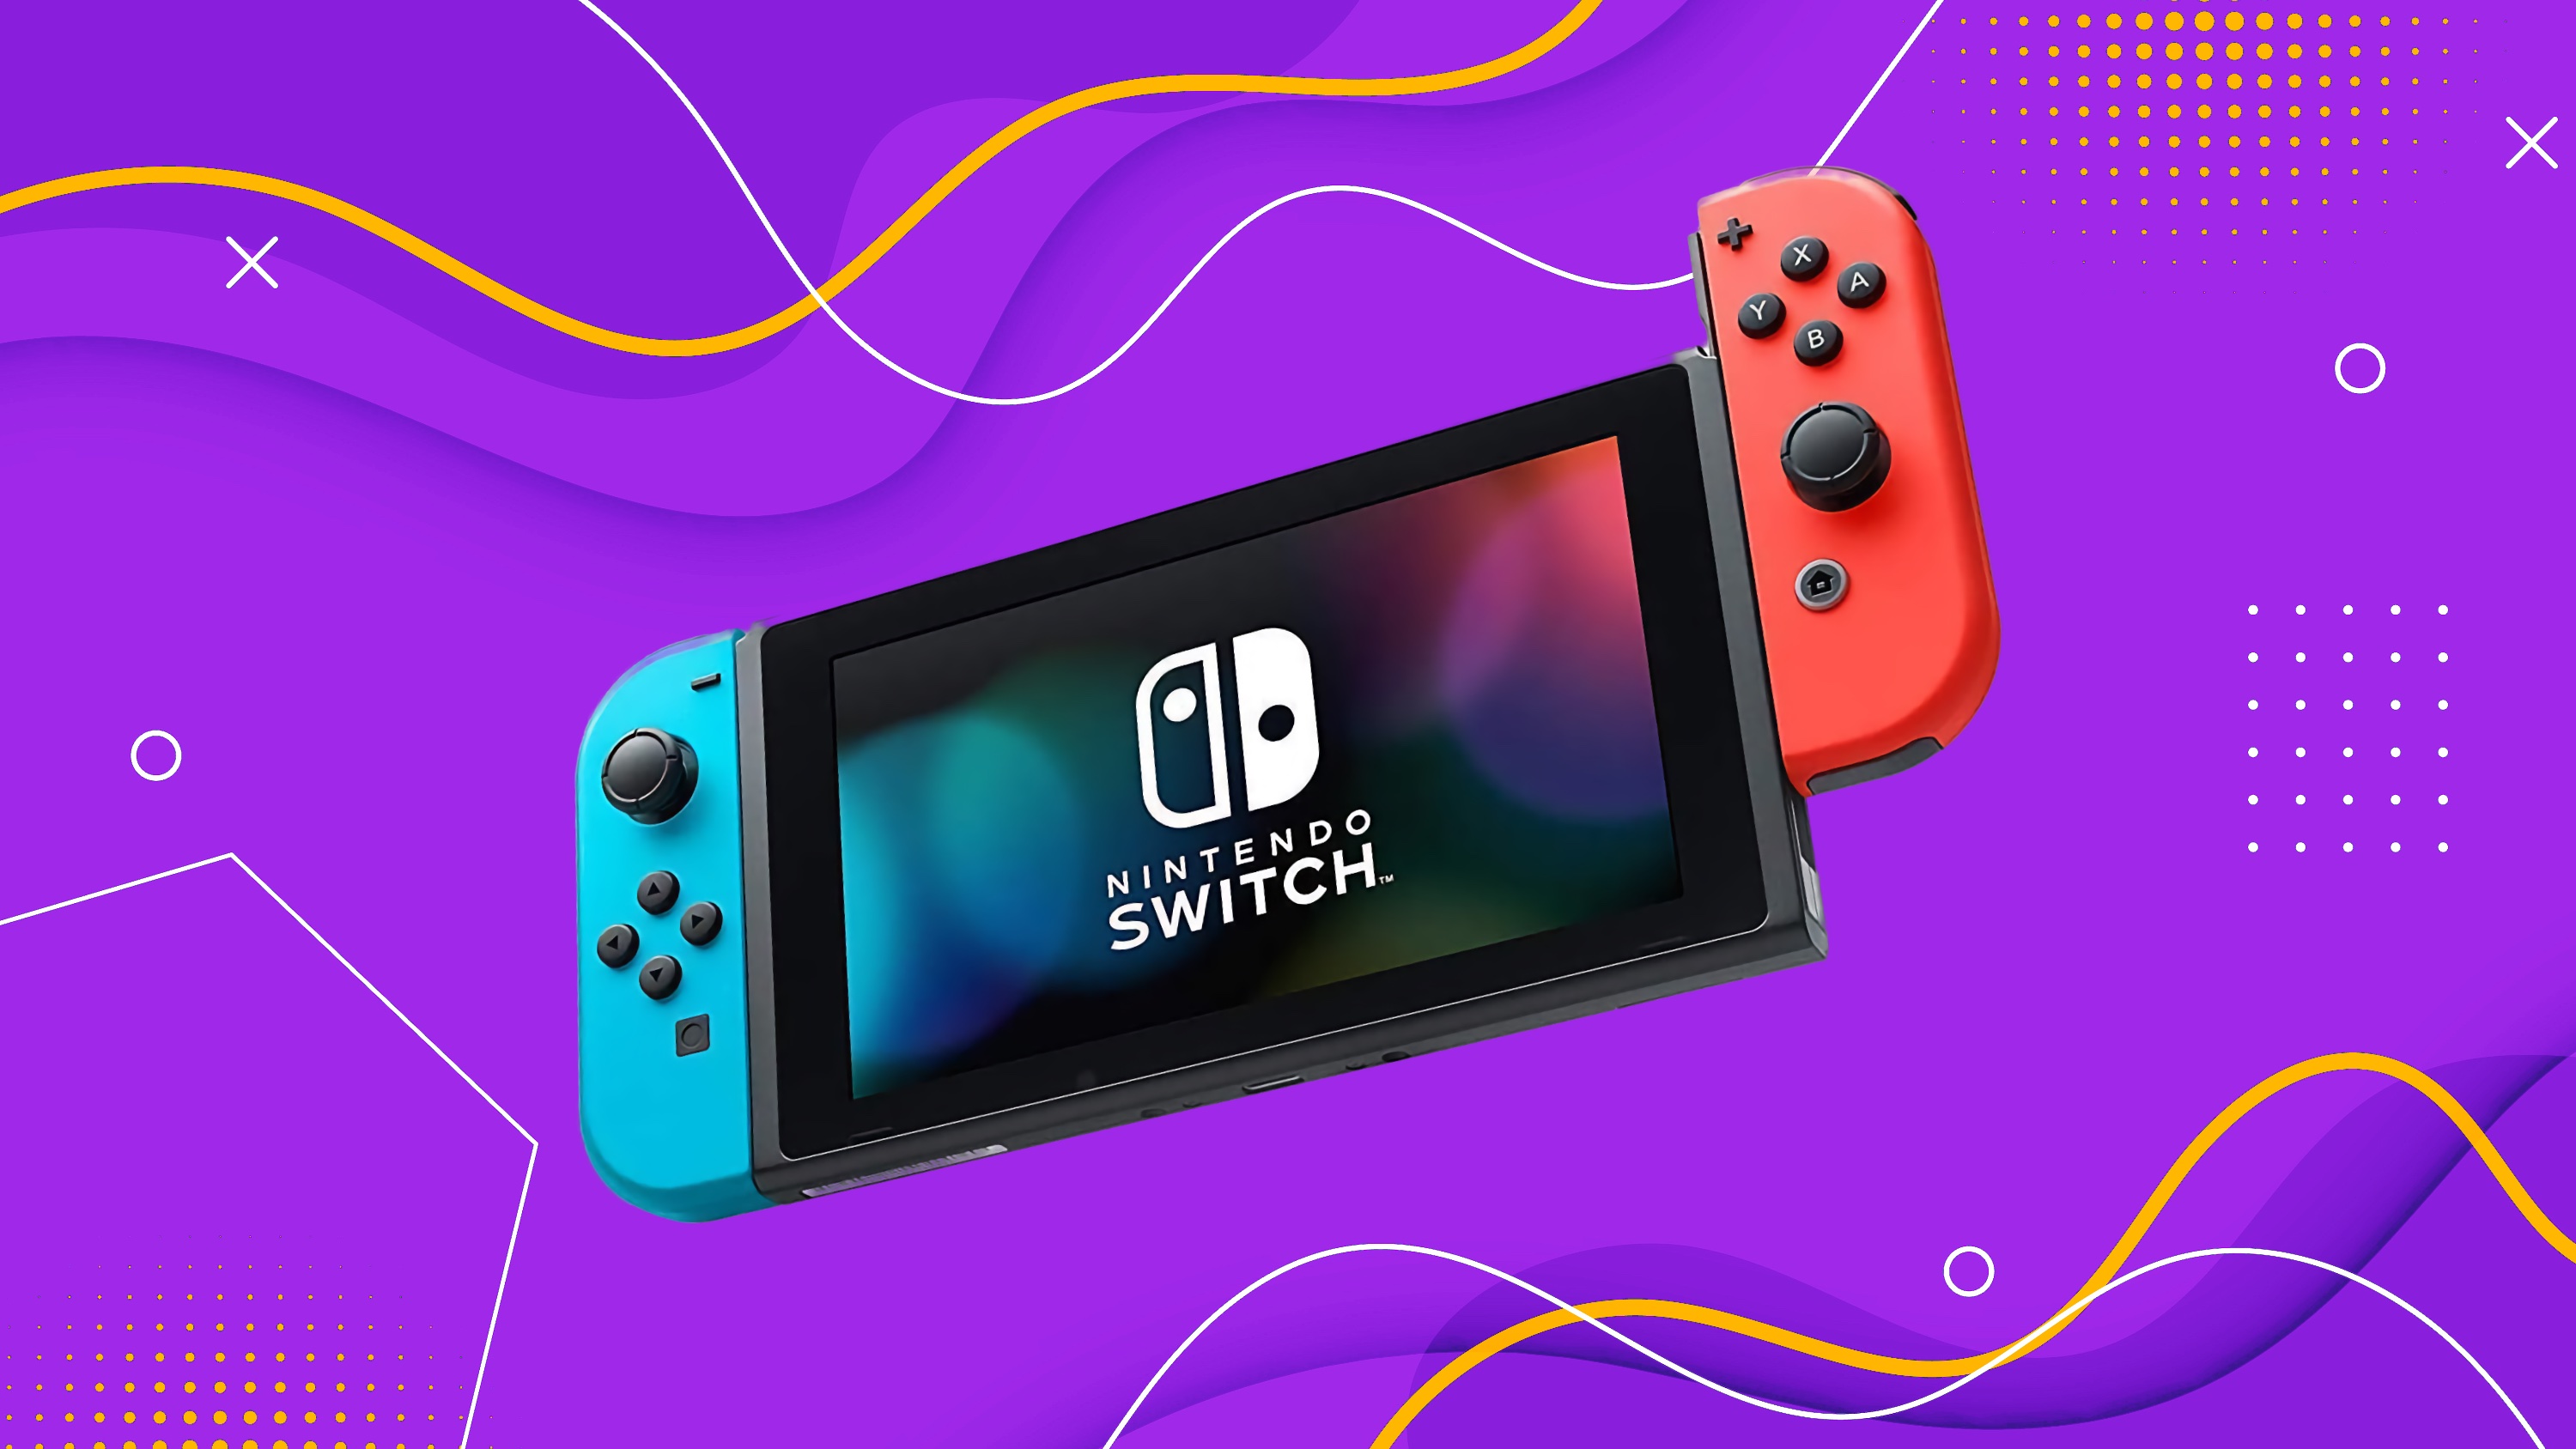 ネットワーク全体の最低価格に挑戦 Nintendo Switch NINTENDO SWITCH